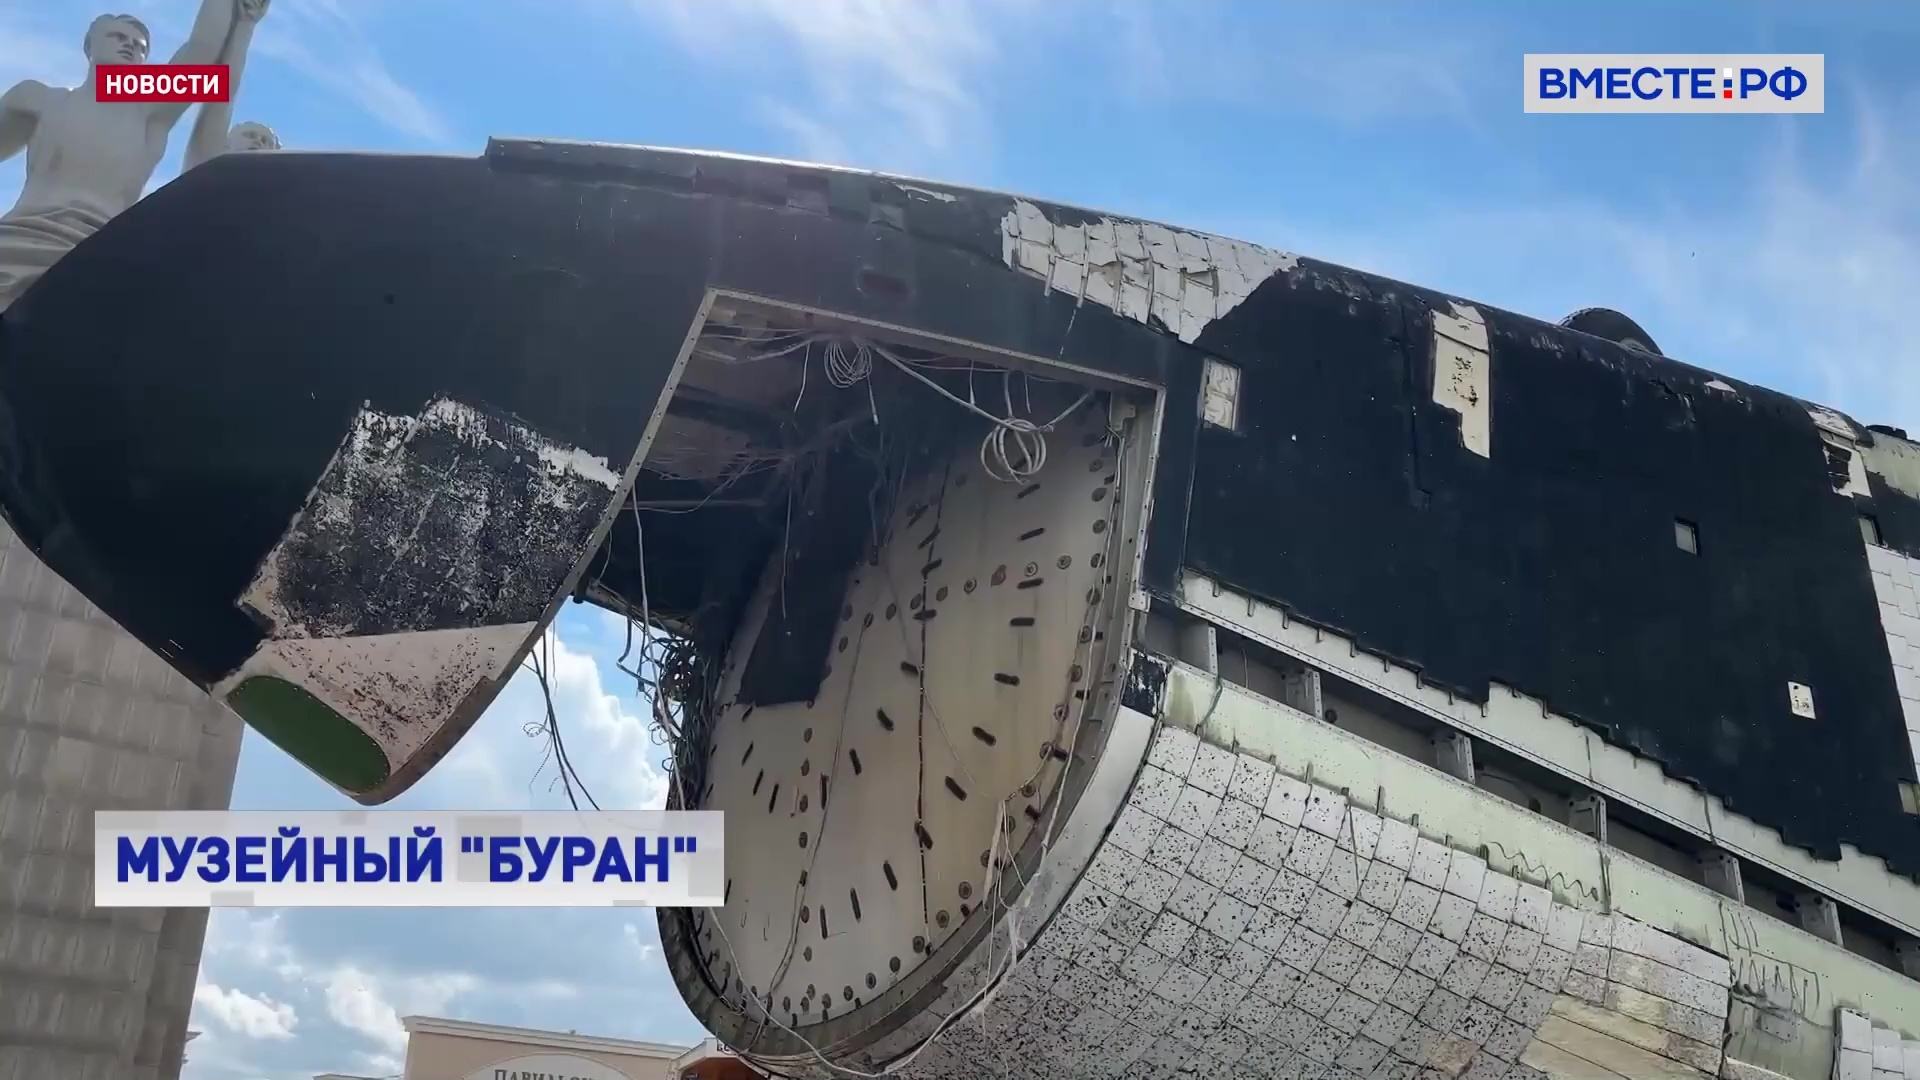 Единственный сохранившийся в РФ космический корабль «Буран» стал музейным экспонатом